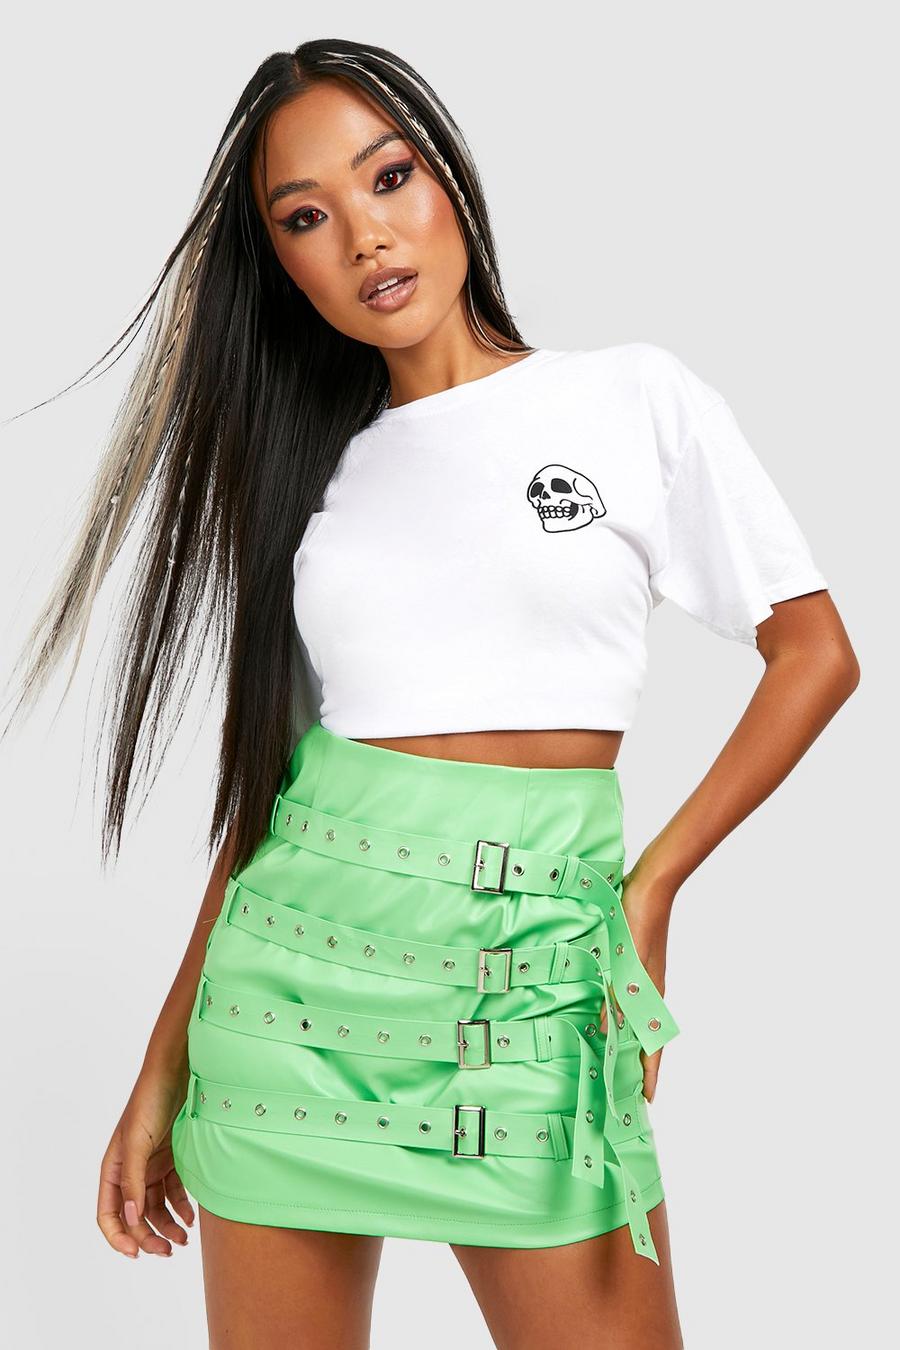 Minifalda Petite de cuero sintético con cinturón y hebilla, Lime verde